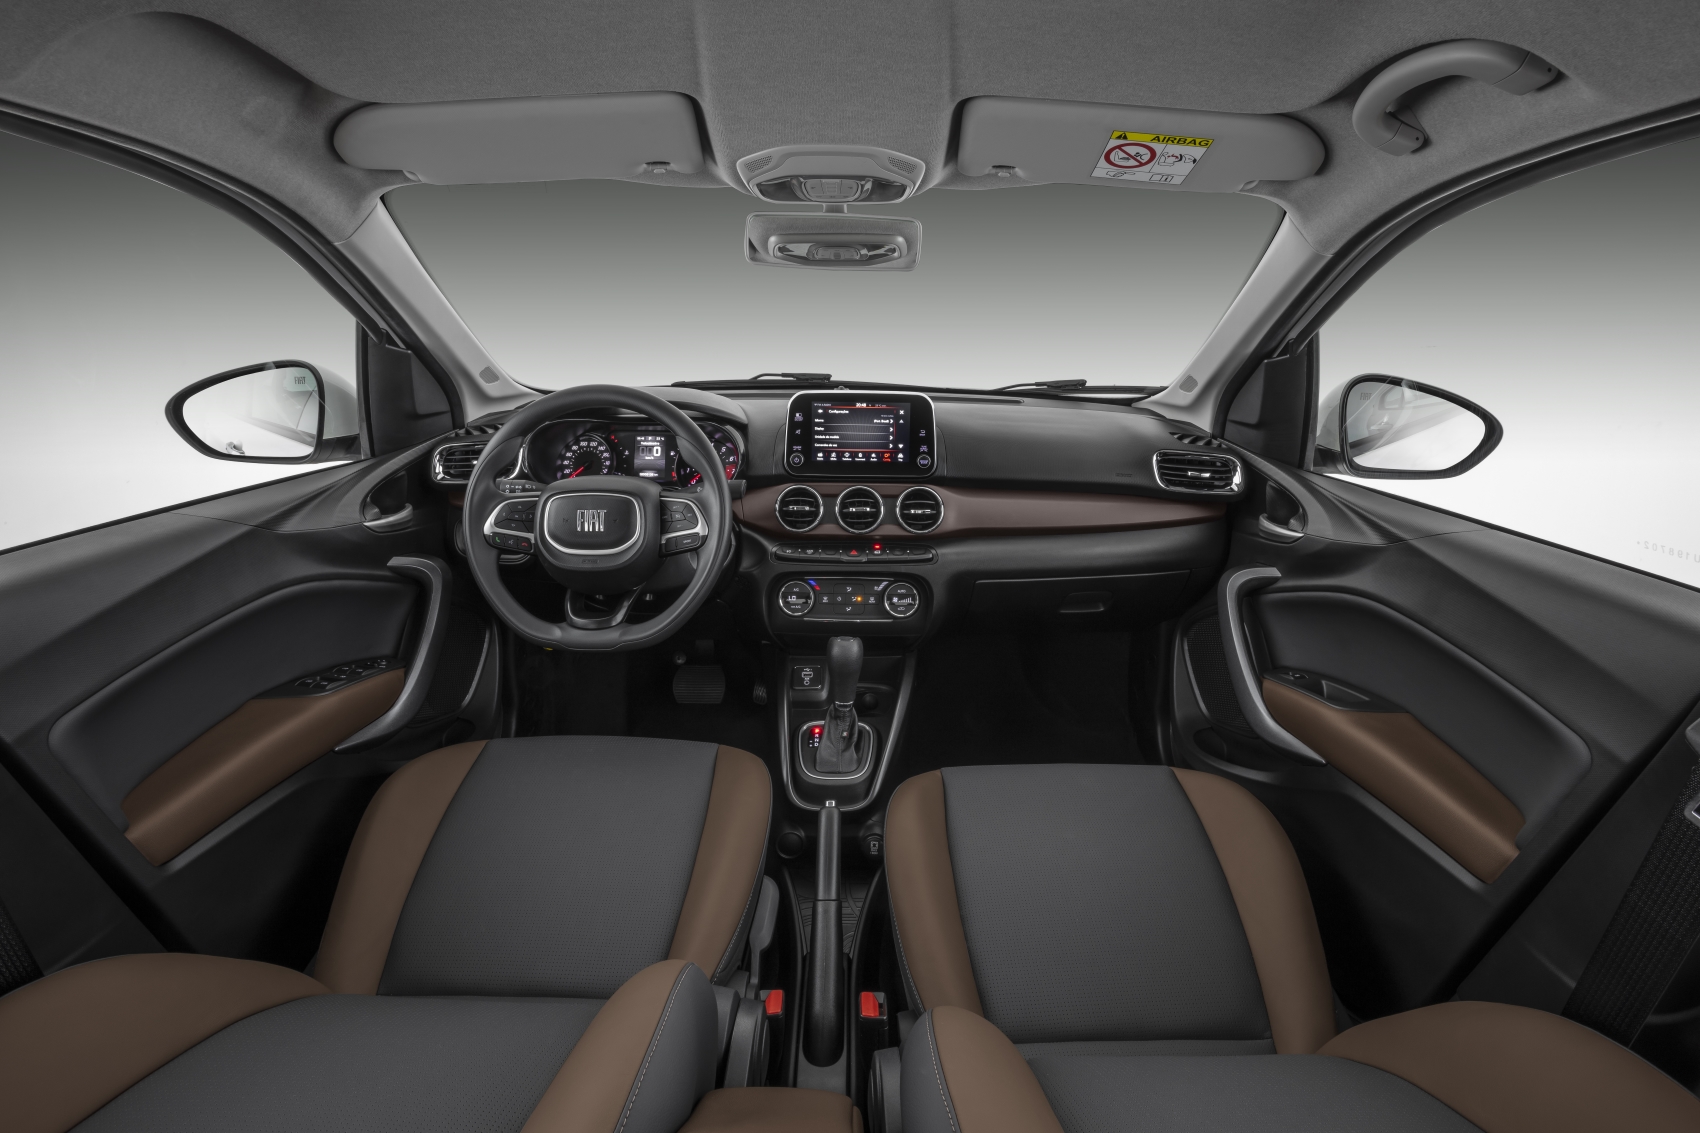 Fiat Cronos 1.3 CVT Precision interior painel prata no estúdio